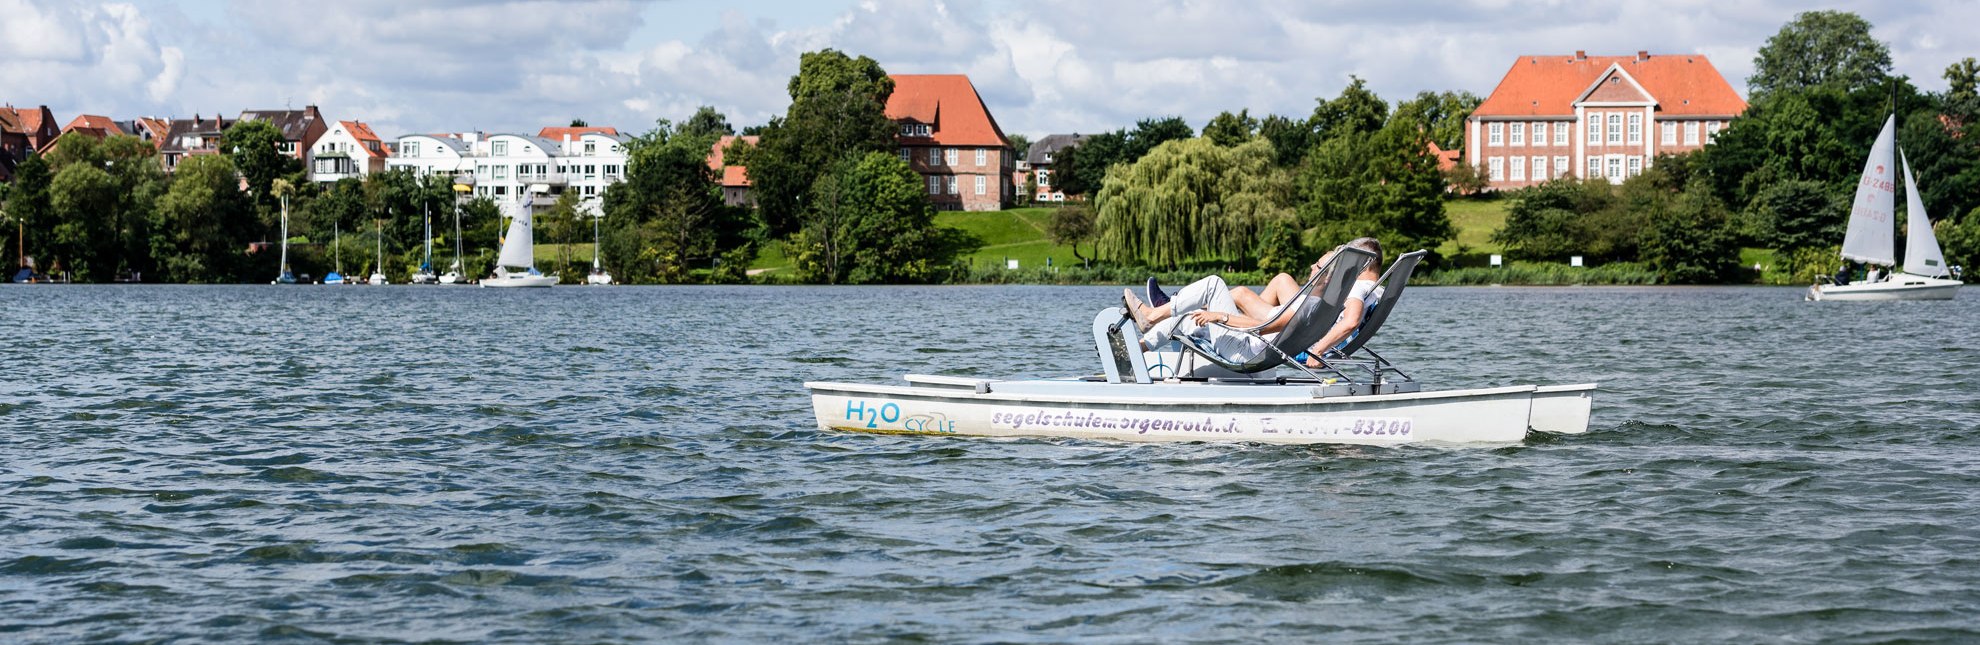 Umrunden Sie die Stadtinsel von Ratzeburg mit dem Tretboot., © Markus Tiemann / HLMS GmbH